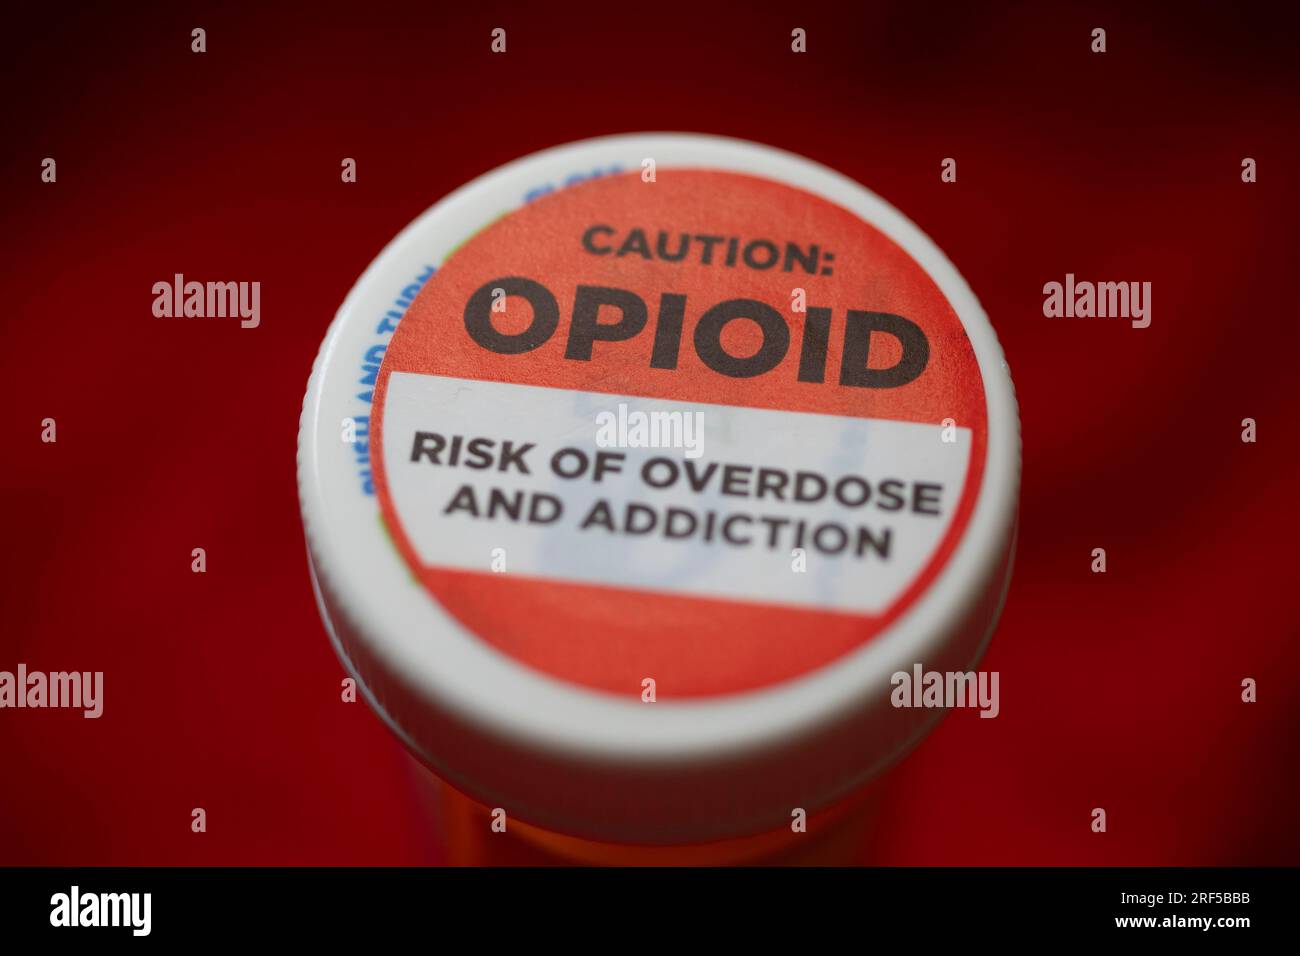 Una etiqueta en una botella de hidrocodona-acetamina opioide, advierte contra el peligro de sobredosis y adicción. Foto de stock